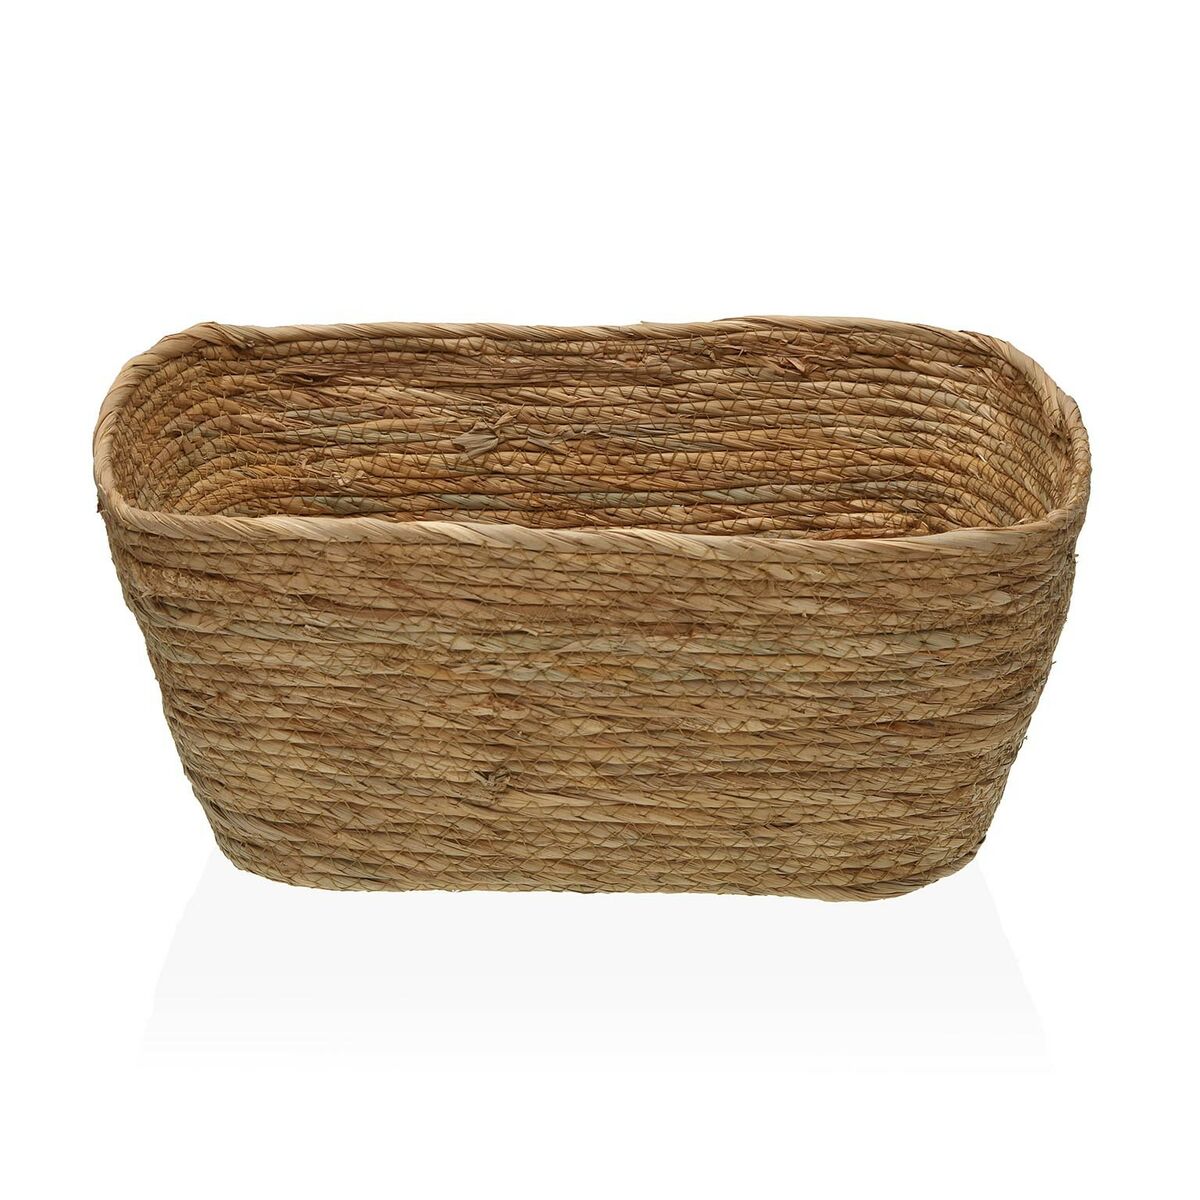 Basket rectangular